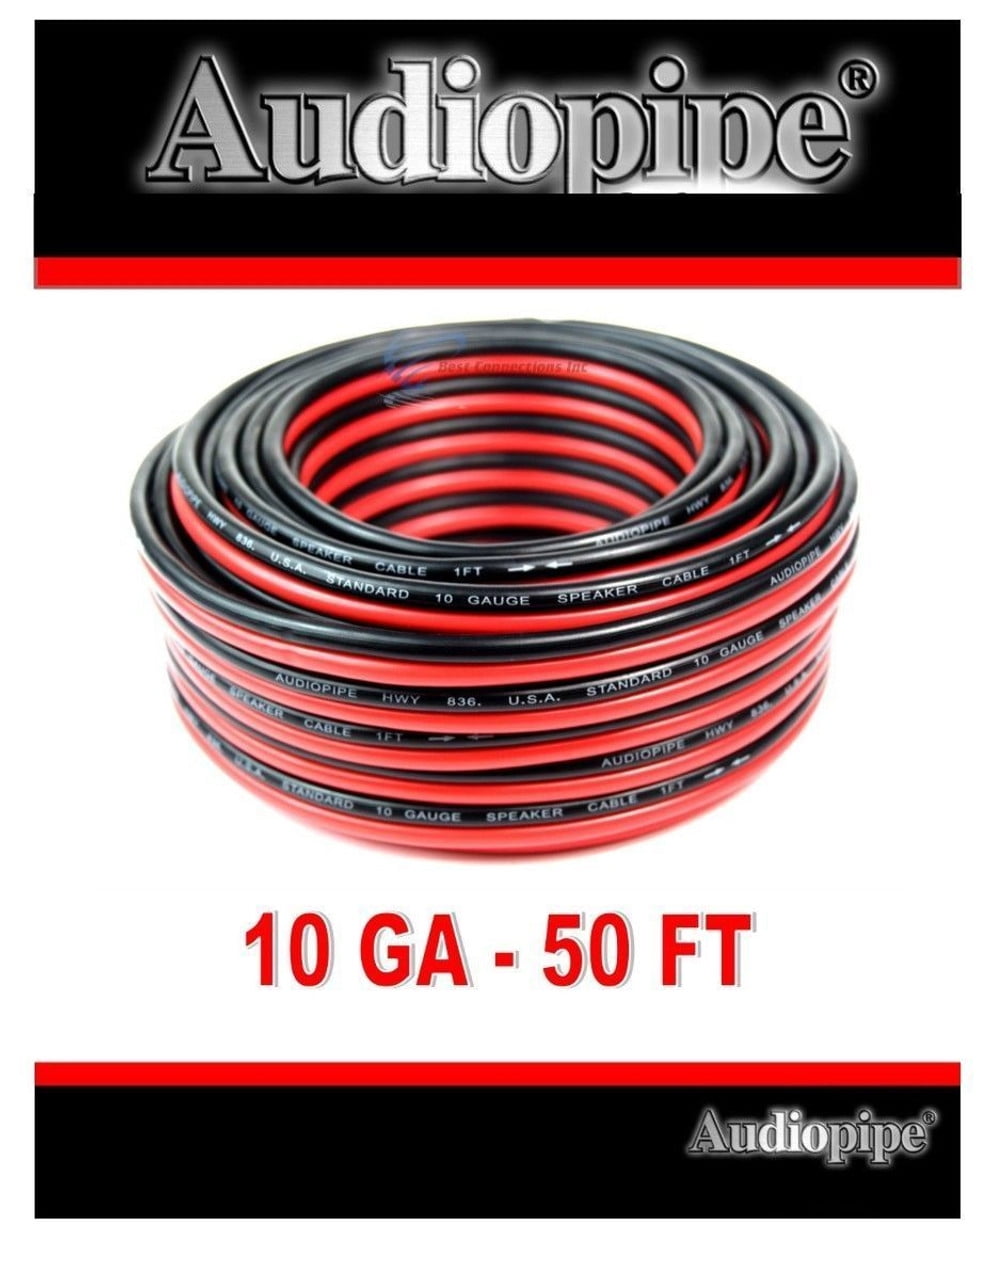 Nægte hierarki sætte ild Audiopipe 50' ft 10 Gauge Red Black Stranded 2 Conductor Speaker Wire for  Car Home Audio Installation - Walmart.com